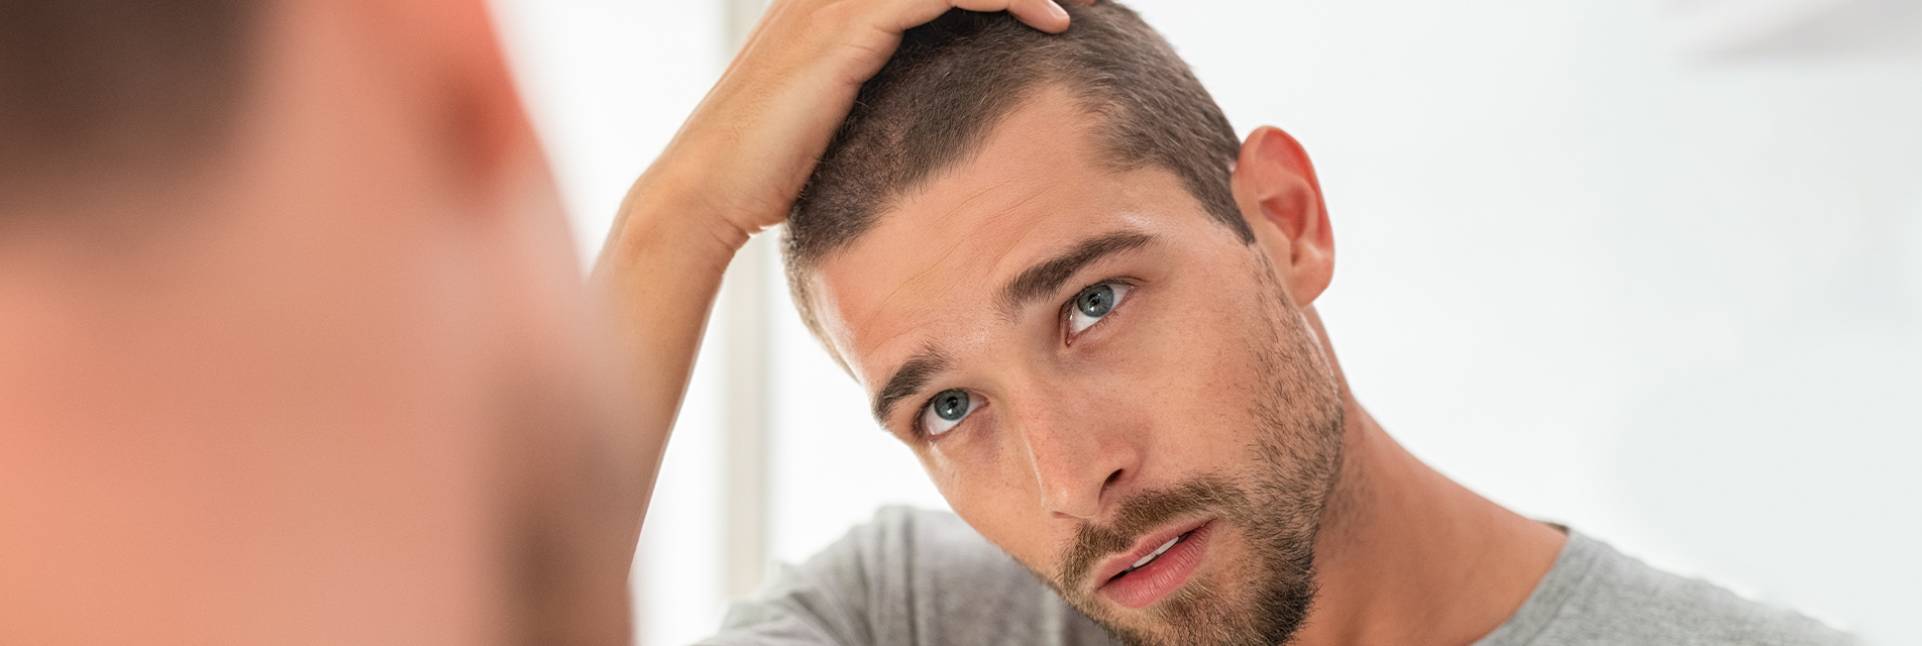 5 consejos para controlar la psoriasis en el cuero cabelludo 